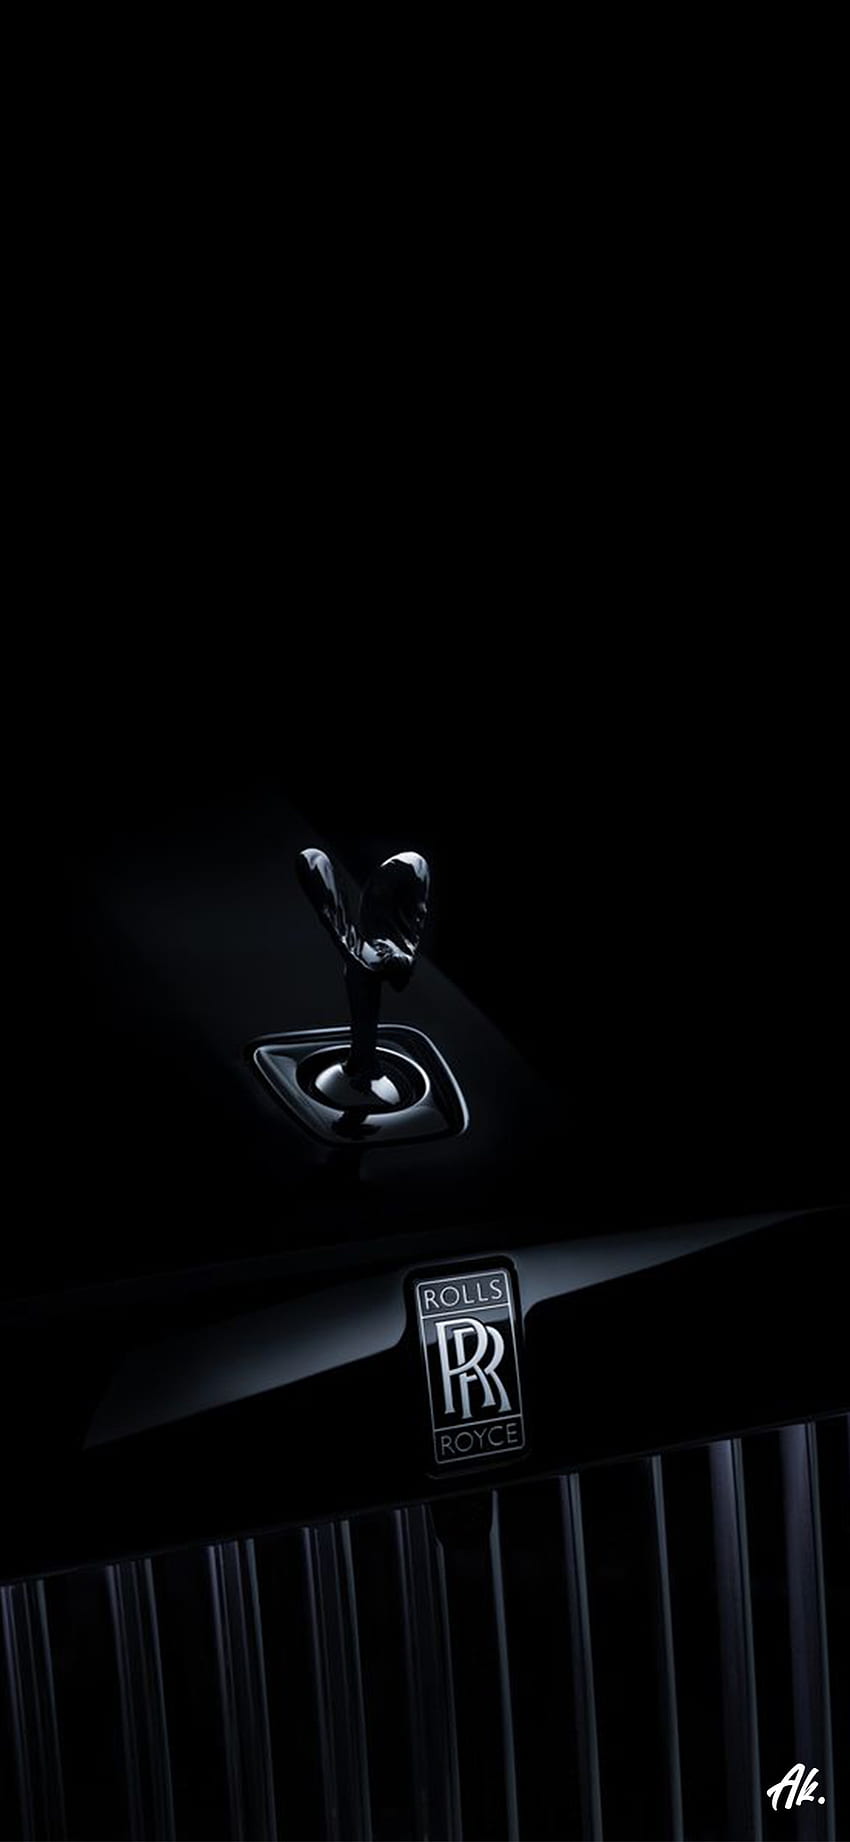 Logotipo de Rolls Royce, exterior_automotriz, automóvil_de_lujo_personal, Rolls_Royce, automóvil, tendencia, negro, oscuro, vehículo fondo de pantalla del teléfono